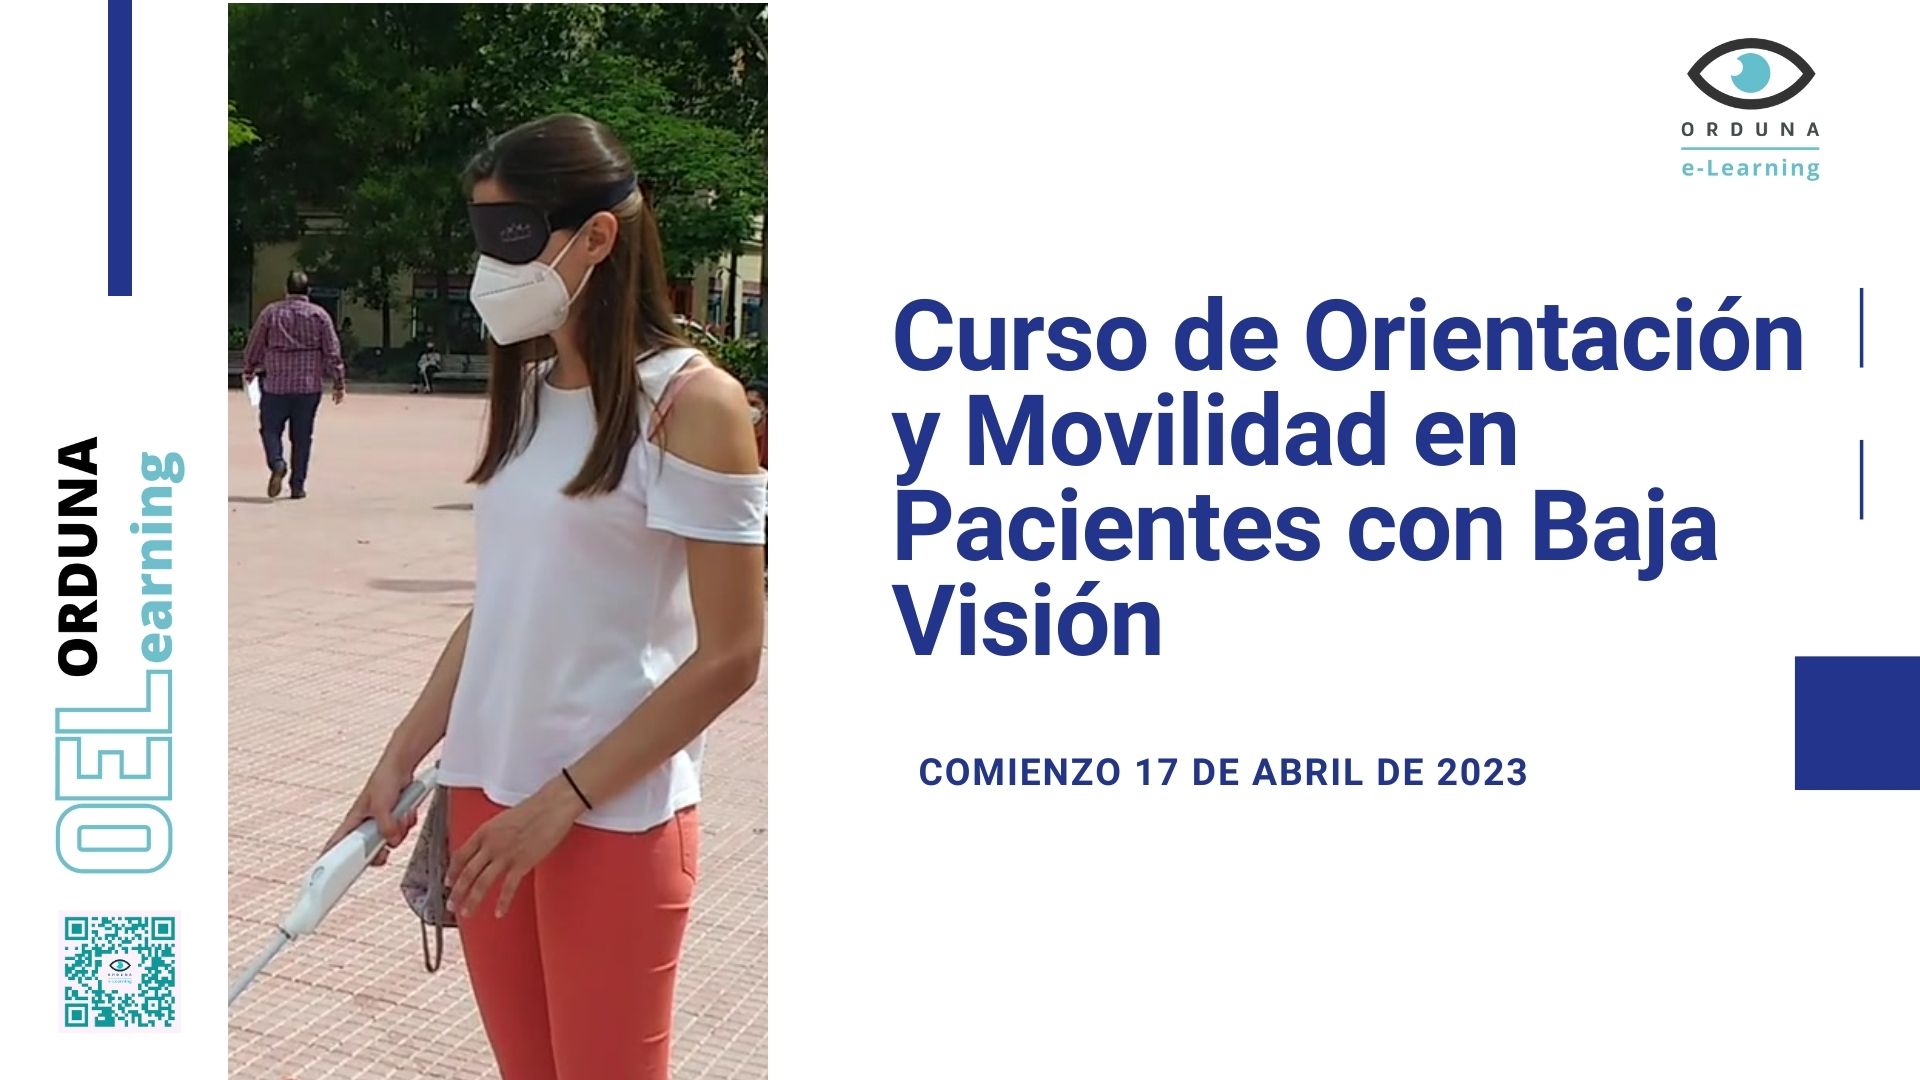 Curso de Orientaci´`on y Movilidad con pacientes de Baja Visión